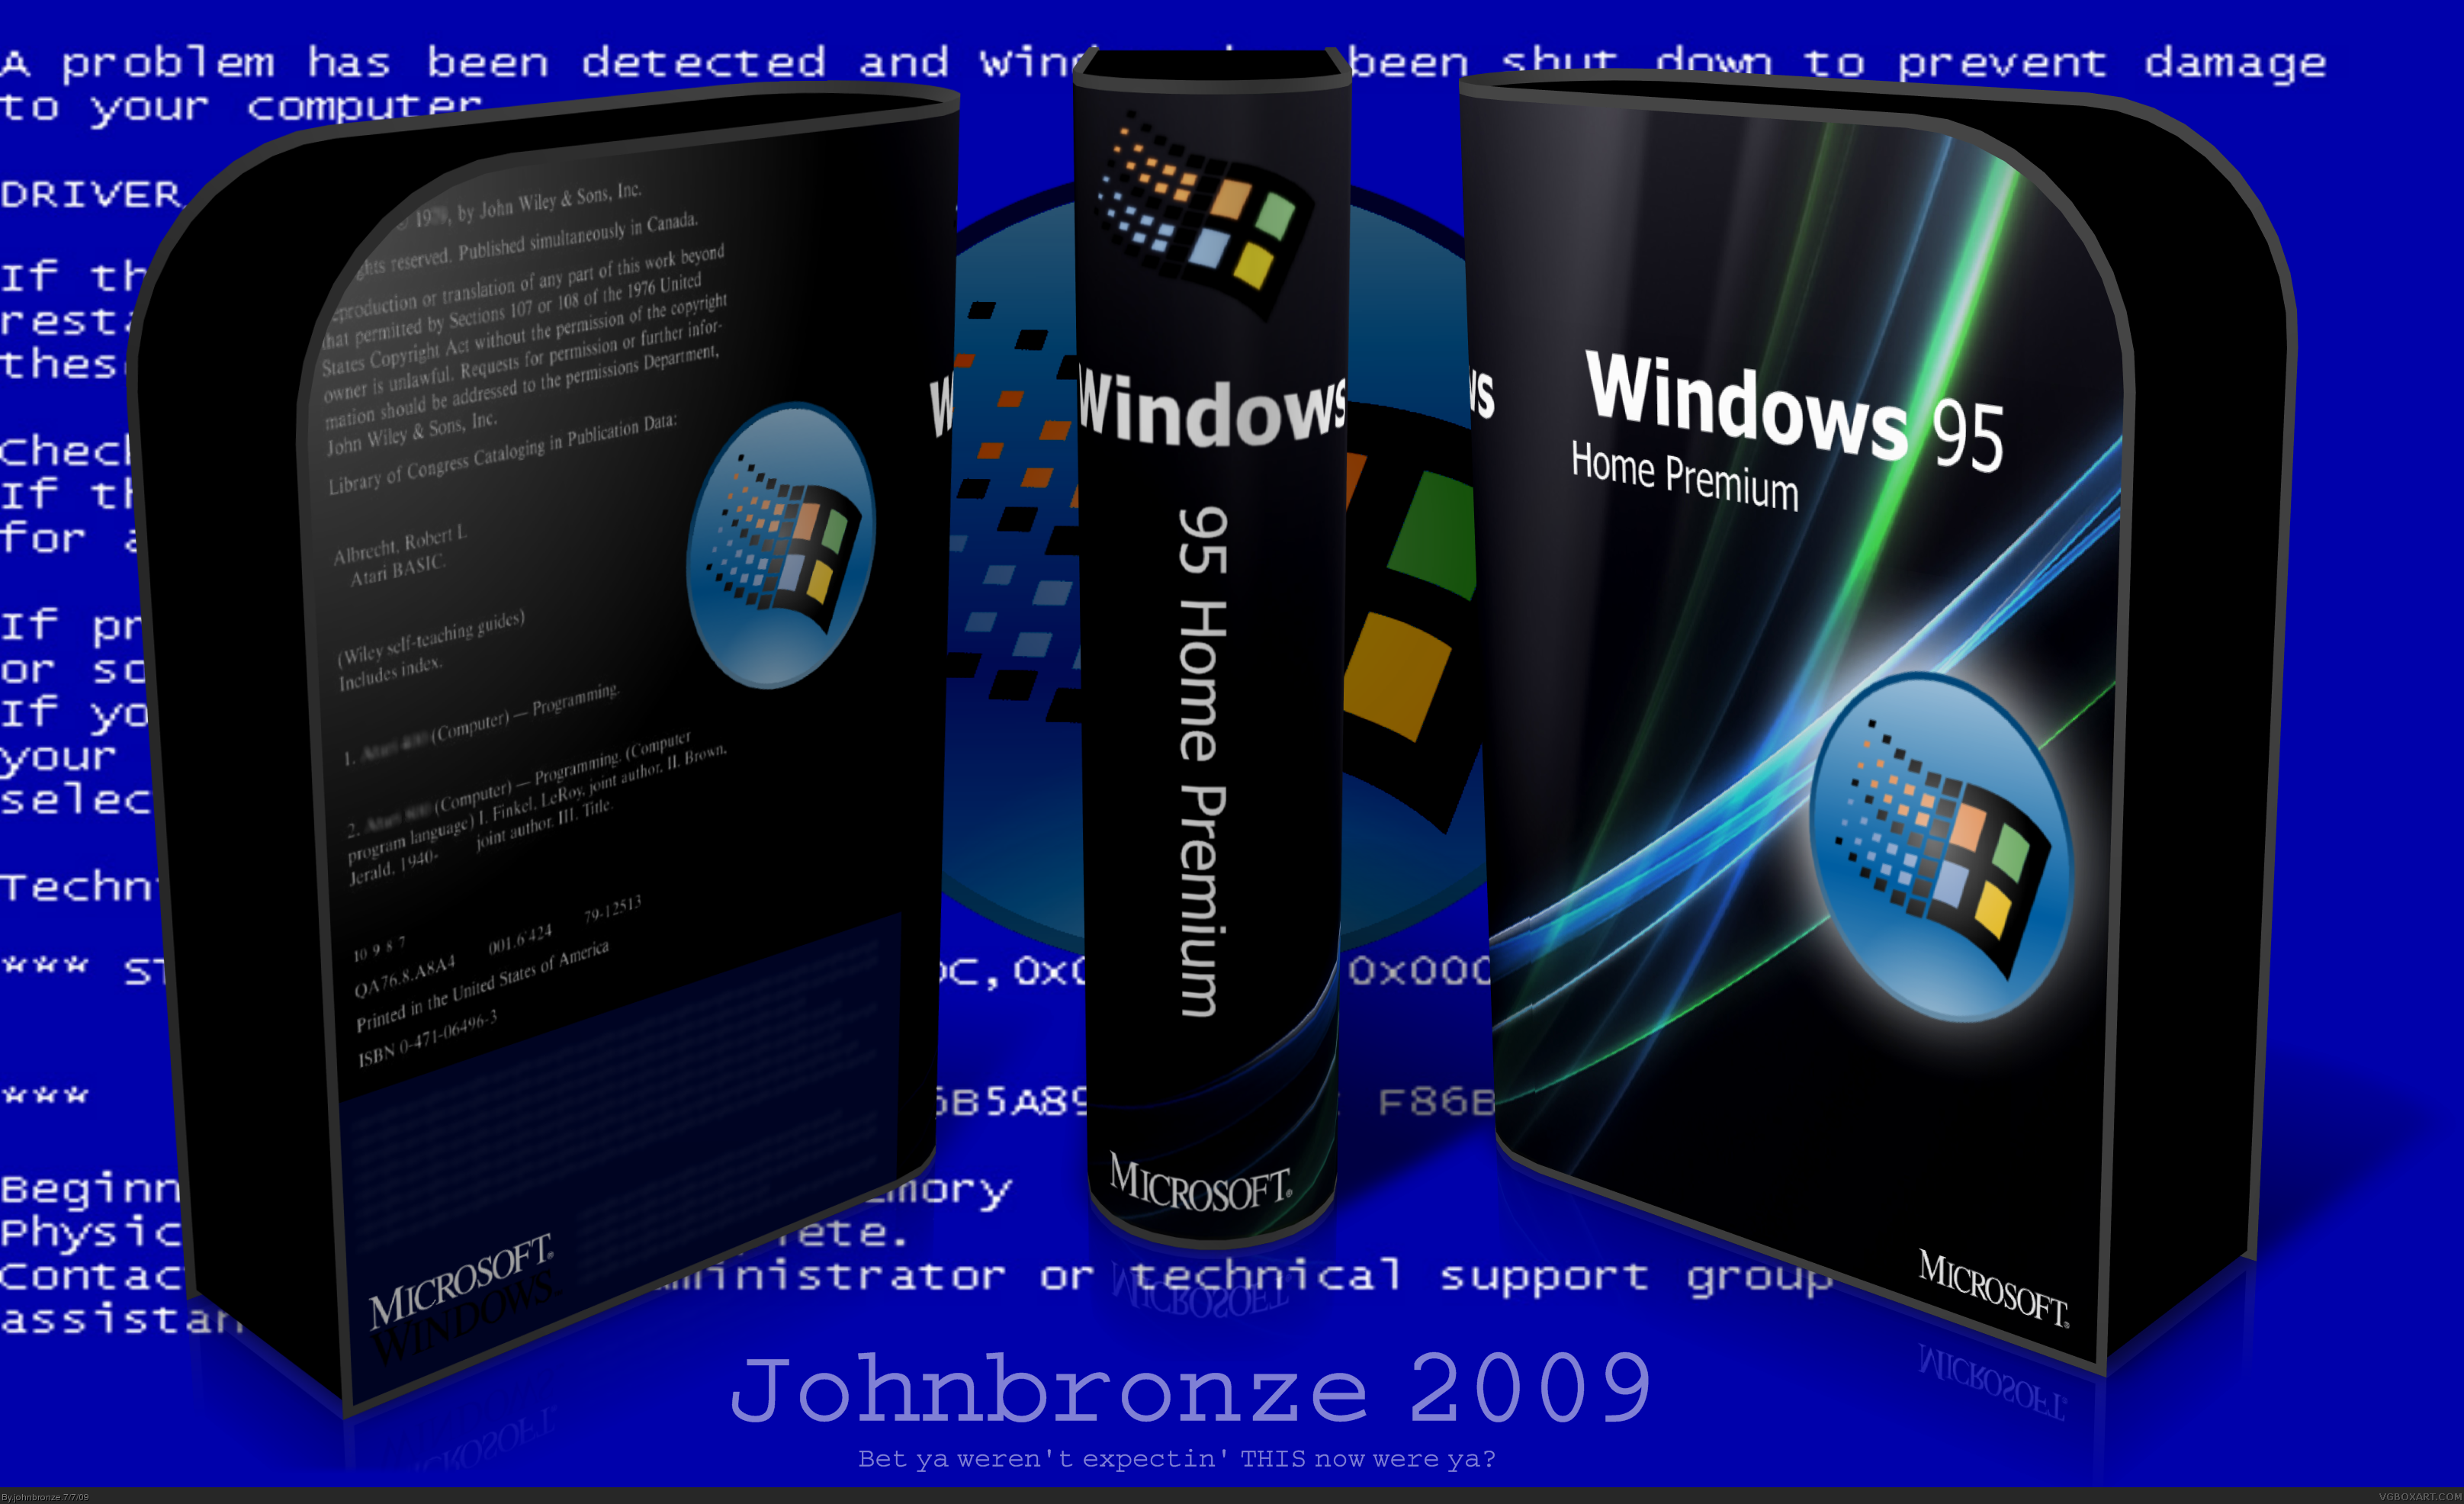 Windows 95 Home Premium box cover